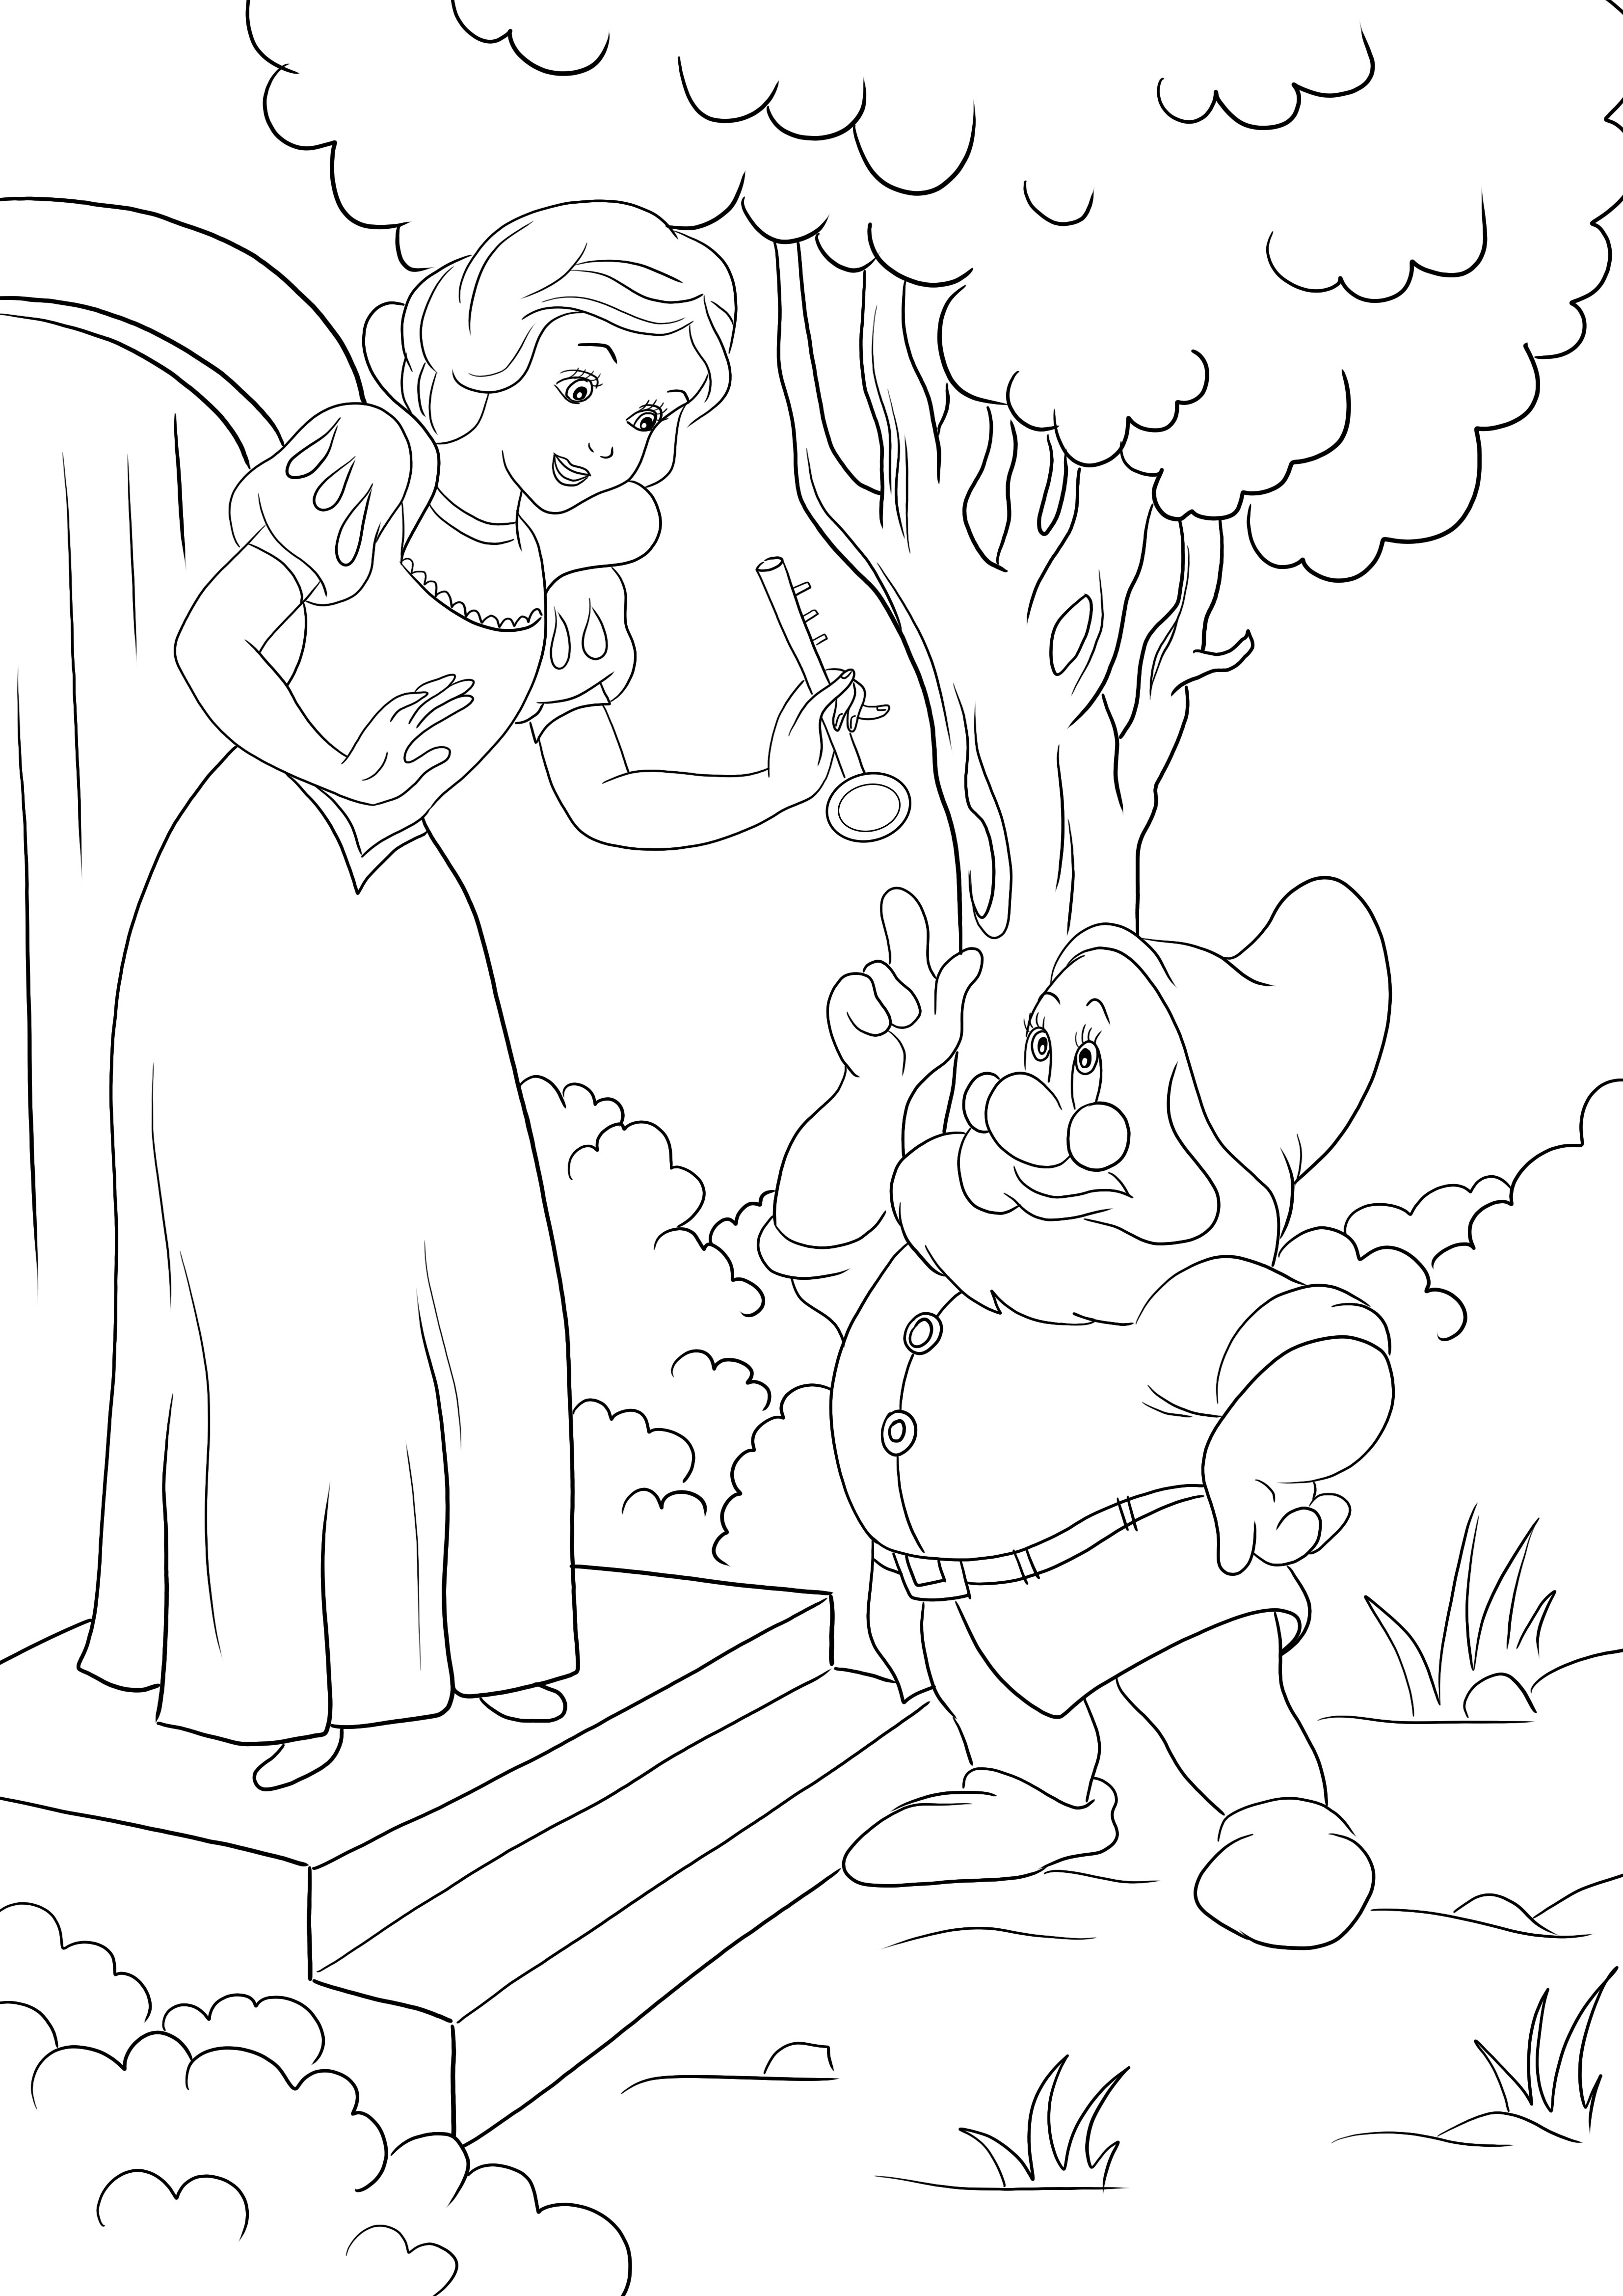 Her yaştan çocuk için kolay boyama için Pamuk Prenses ve Doc Dwarf içermeyen yazdırılabilir